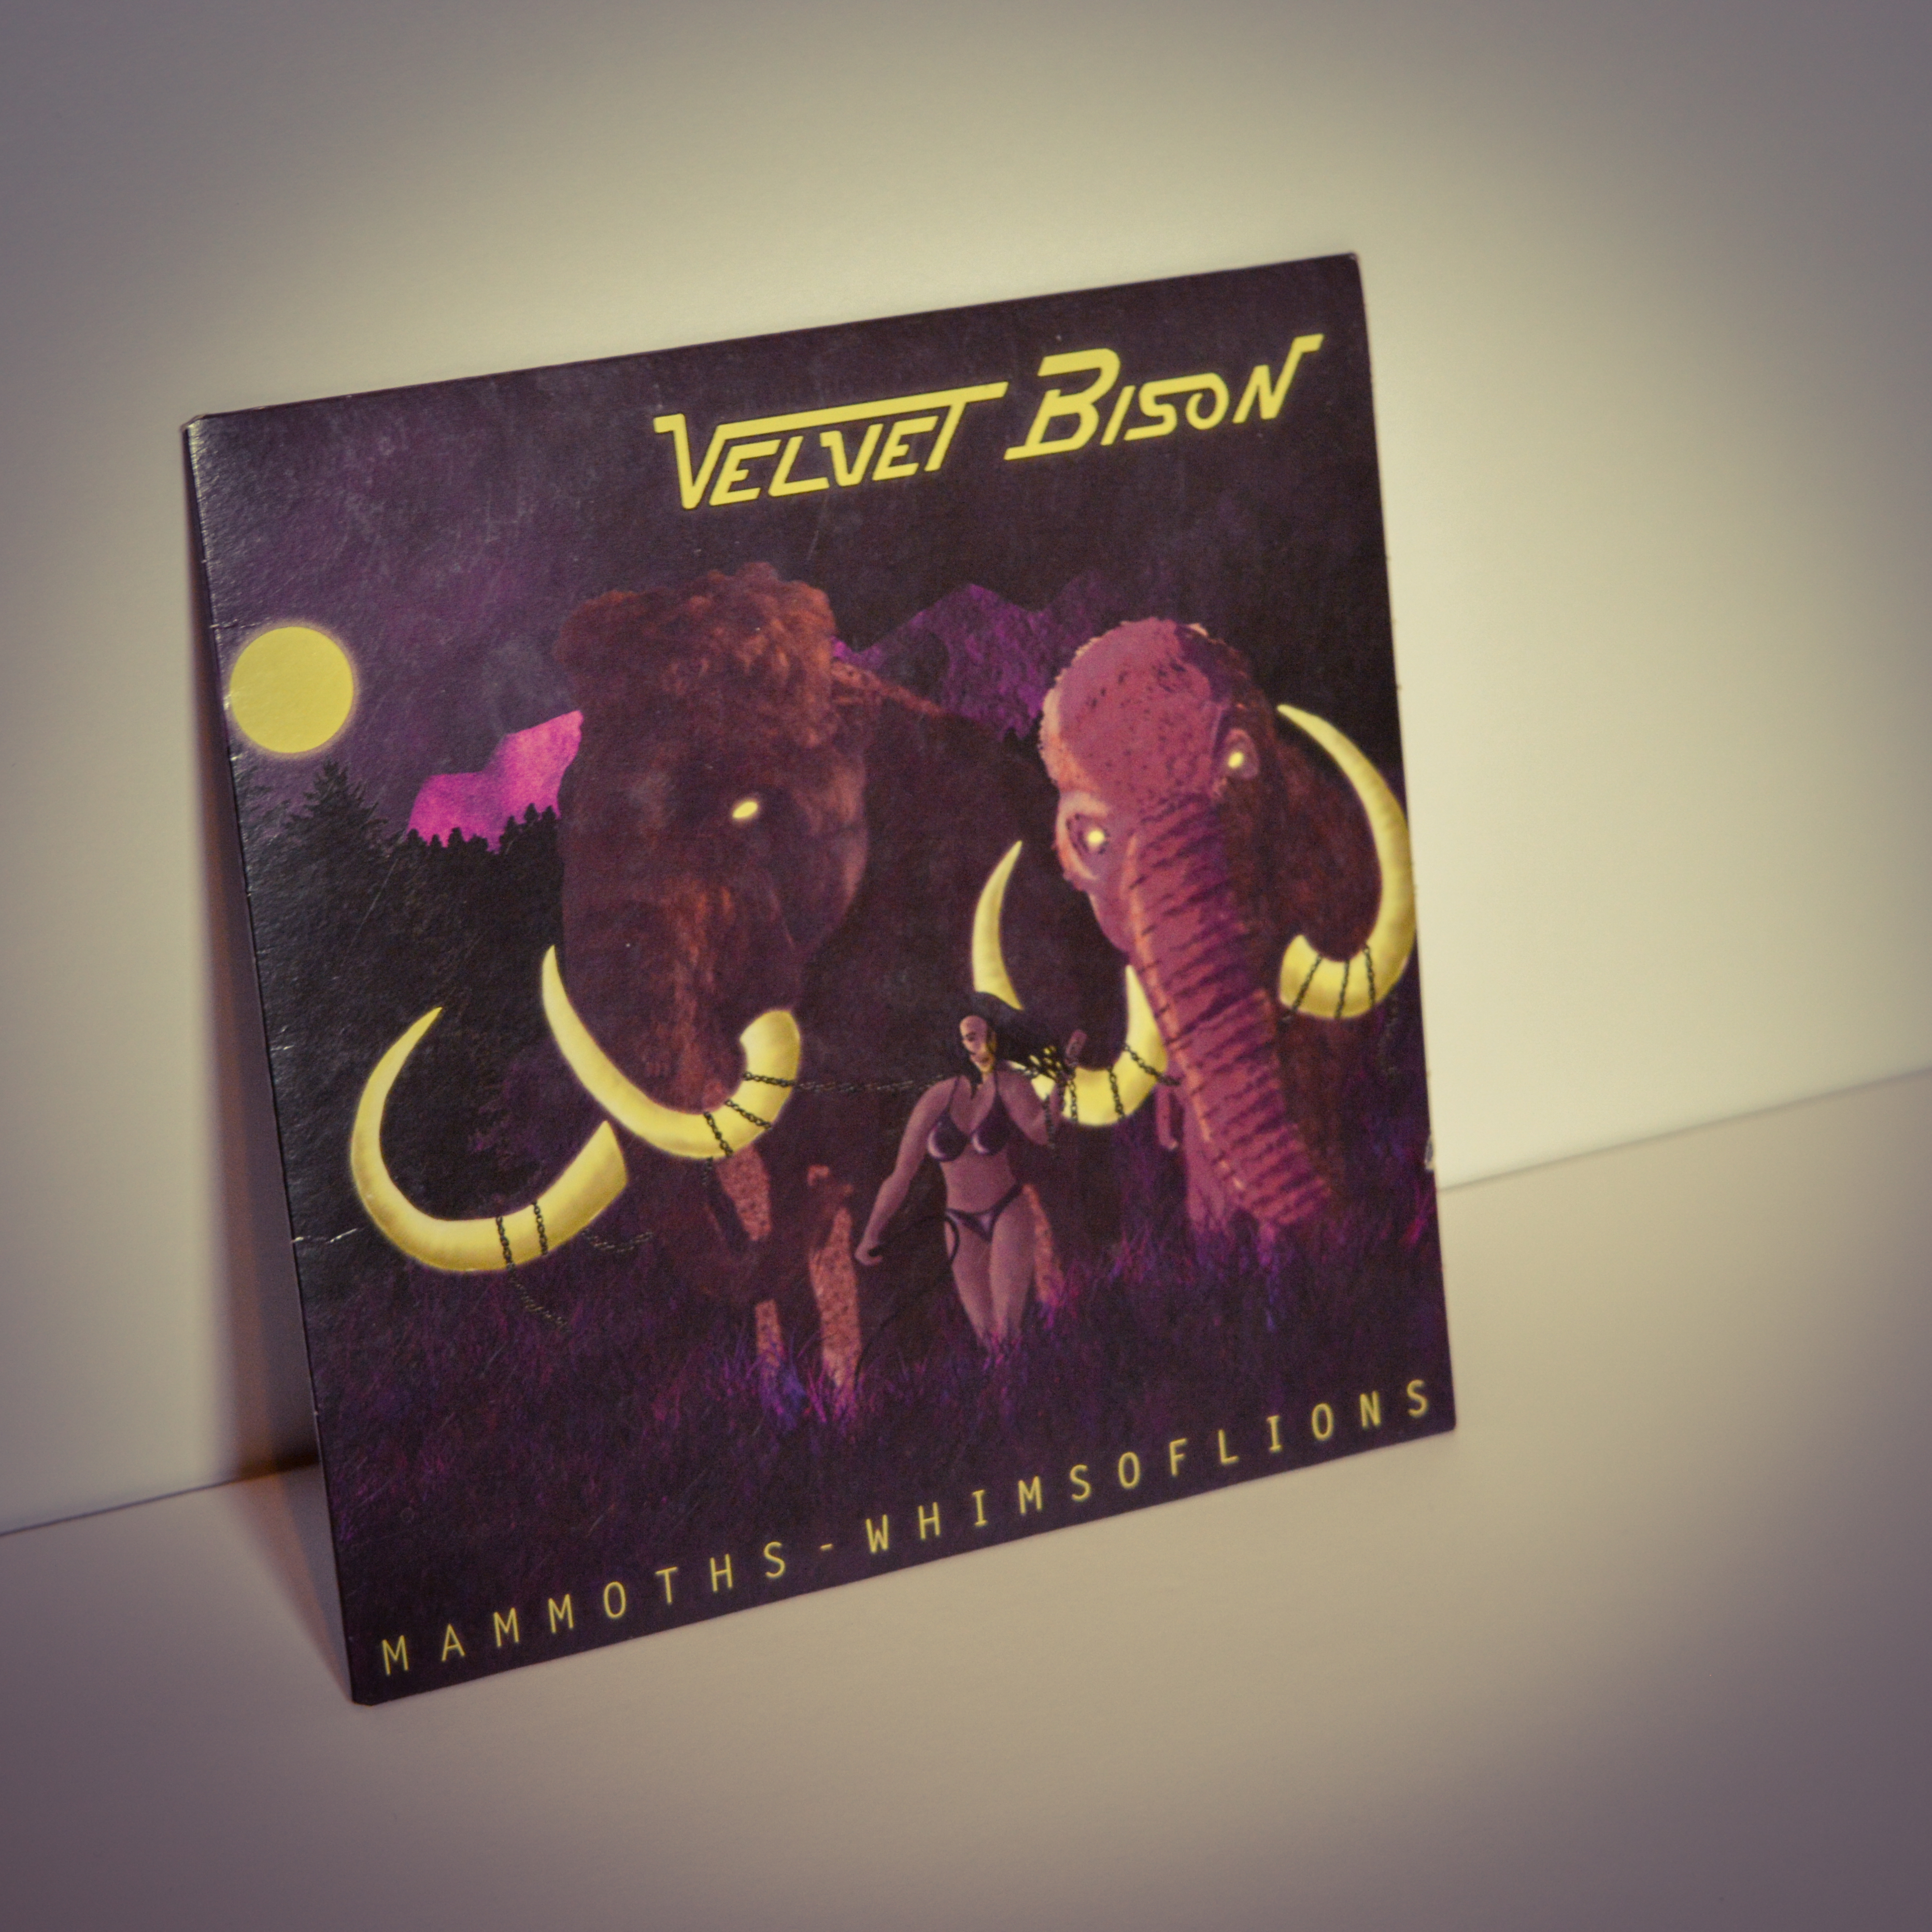 Velvet Bison – Mammoths / Whims of Lions (7″)